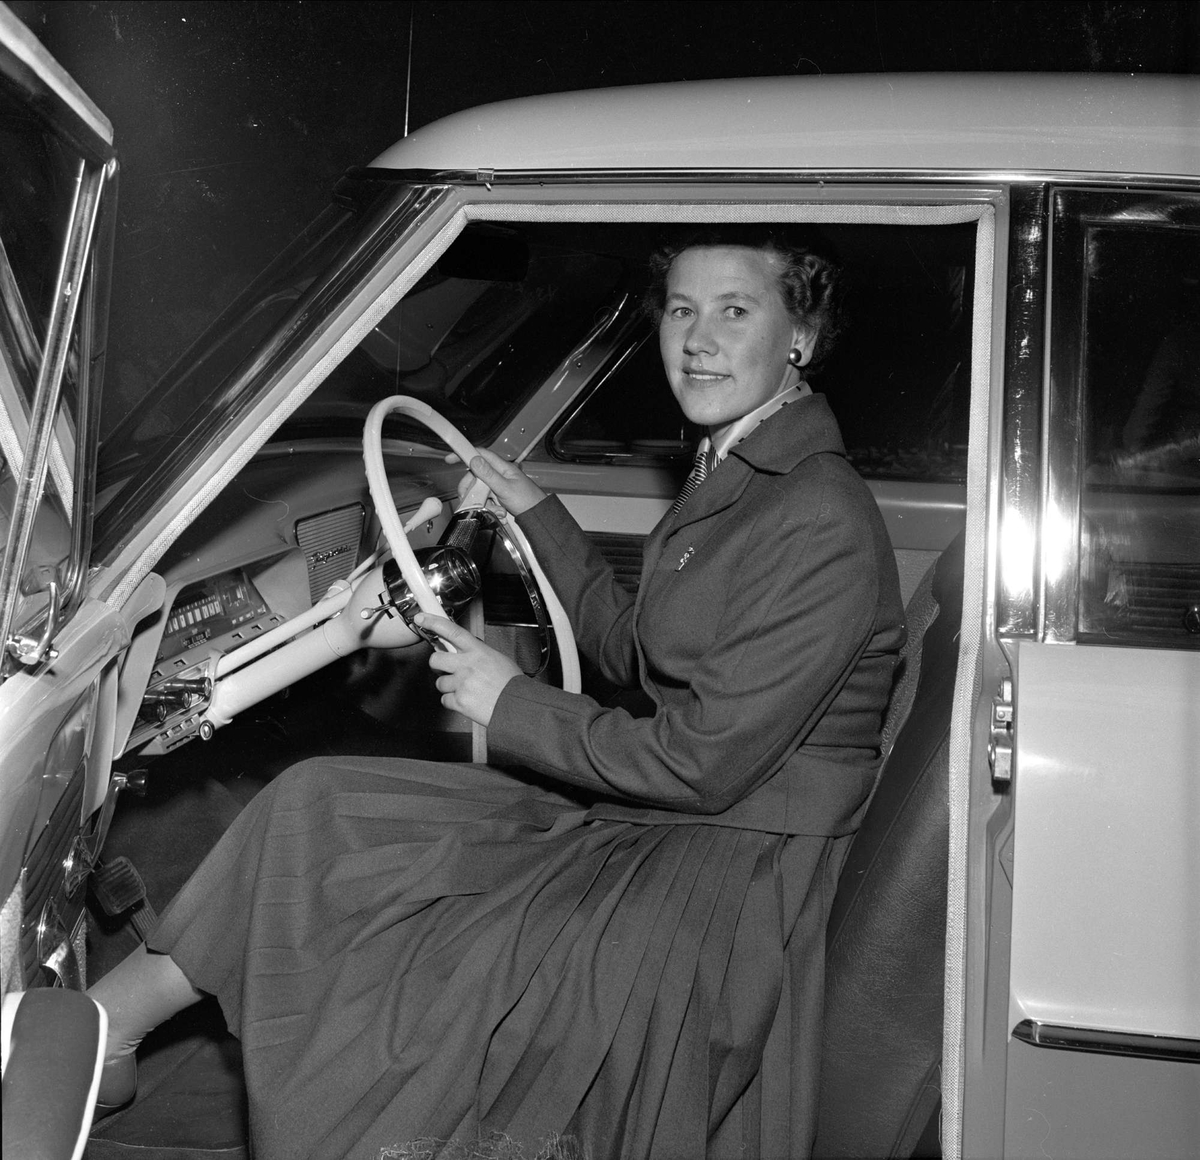 Bilutstilling, merke Ford, antakelig Oslo, 10.09.1956. Dame i førersete på bil.